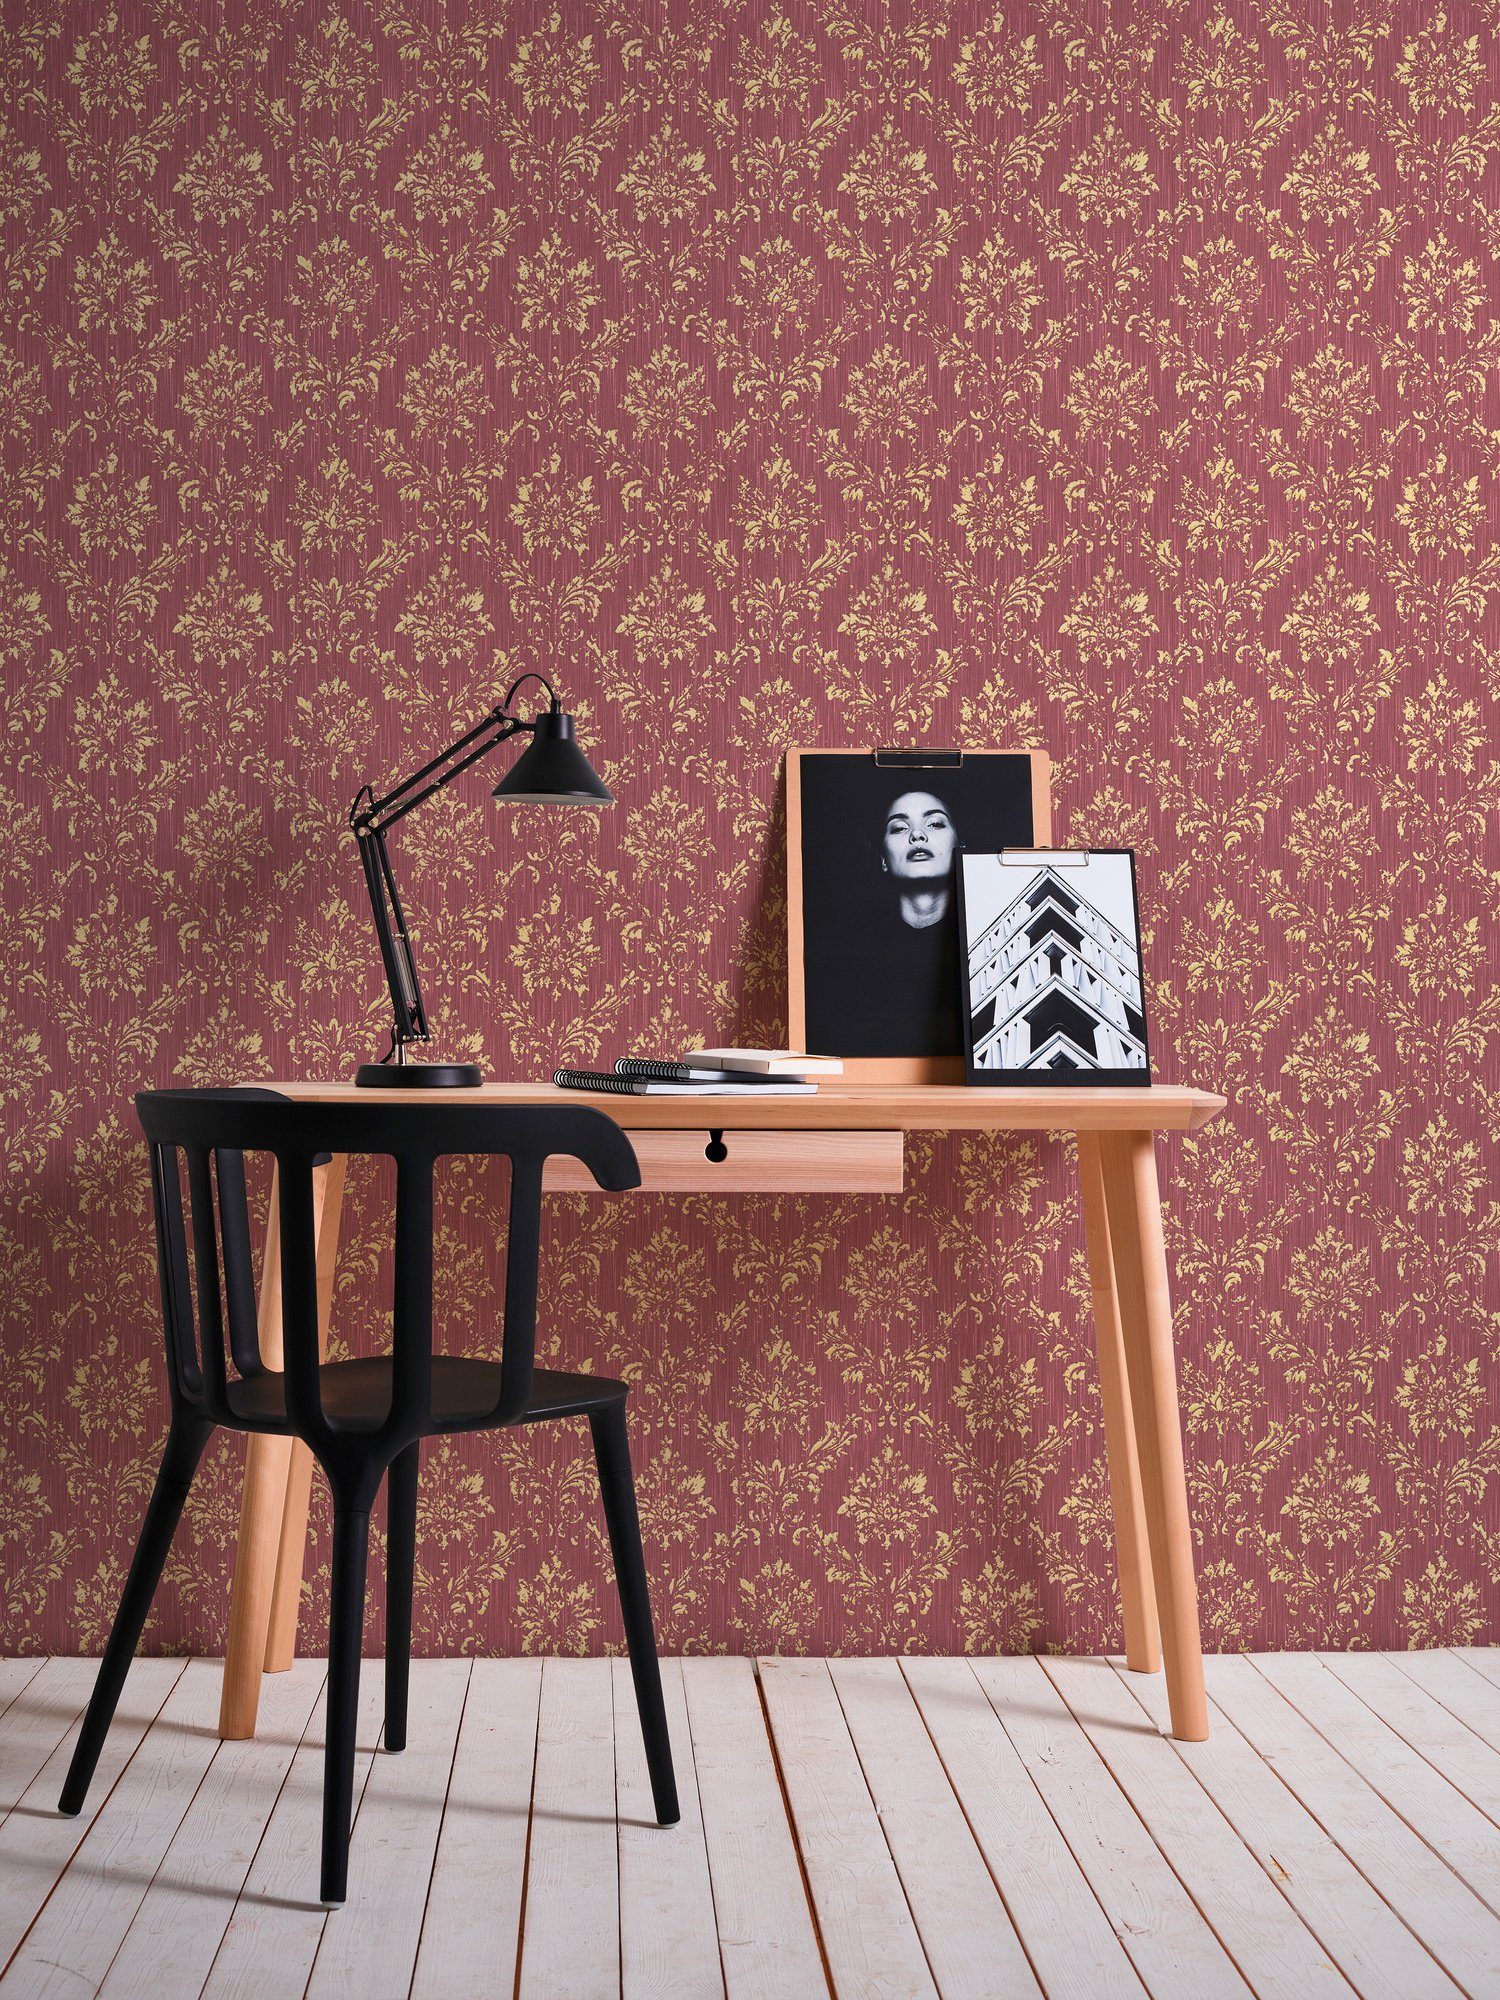 rot/gold Metallic Silk, Textiltapete Barock, Création glänzend, Architects matt, A.S. Tapete Ornament Barock samtig, Paper